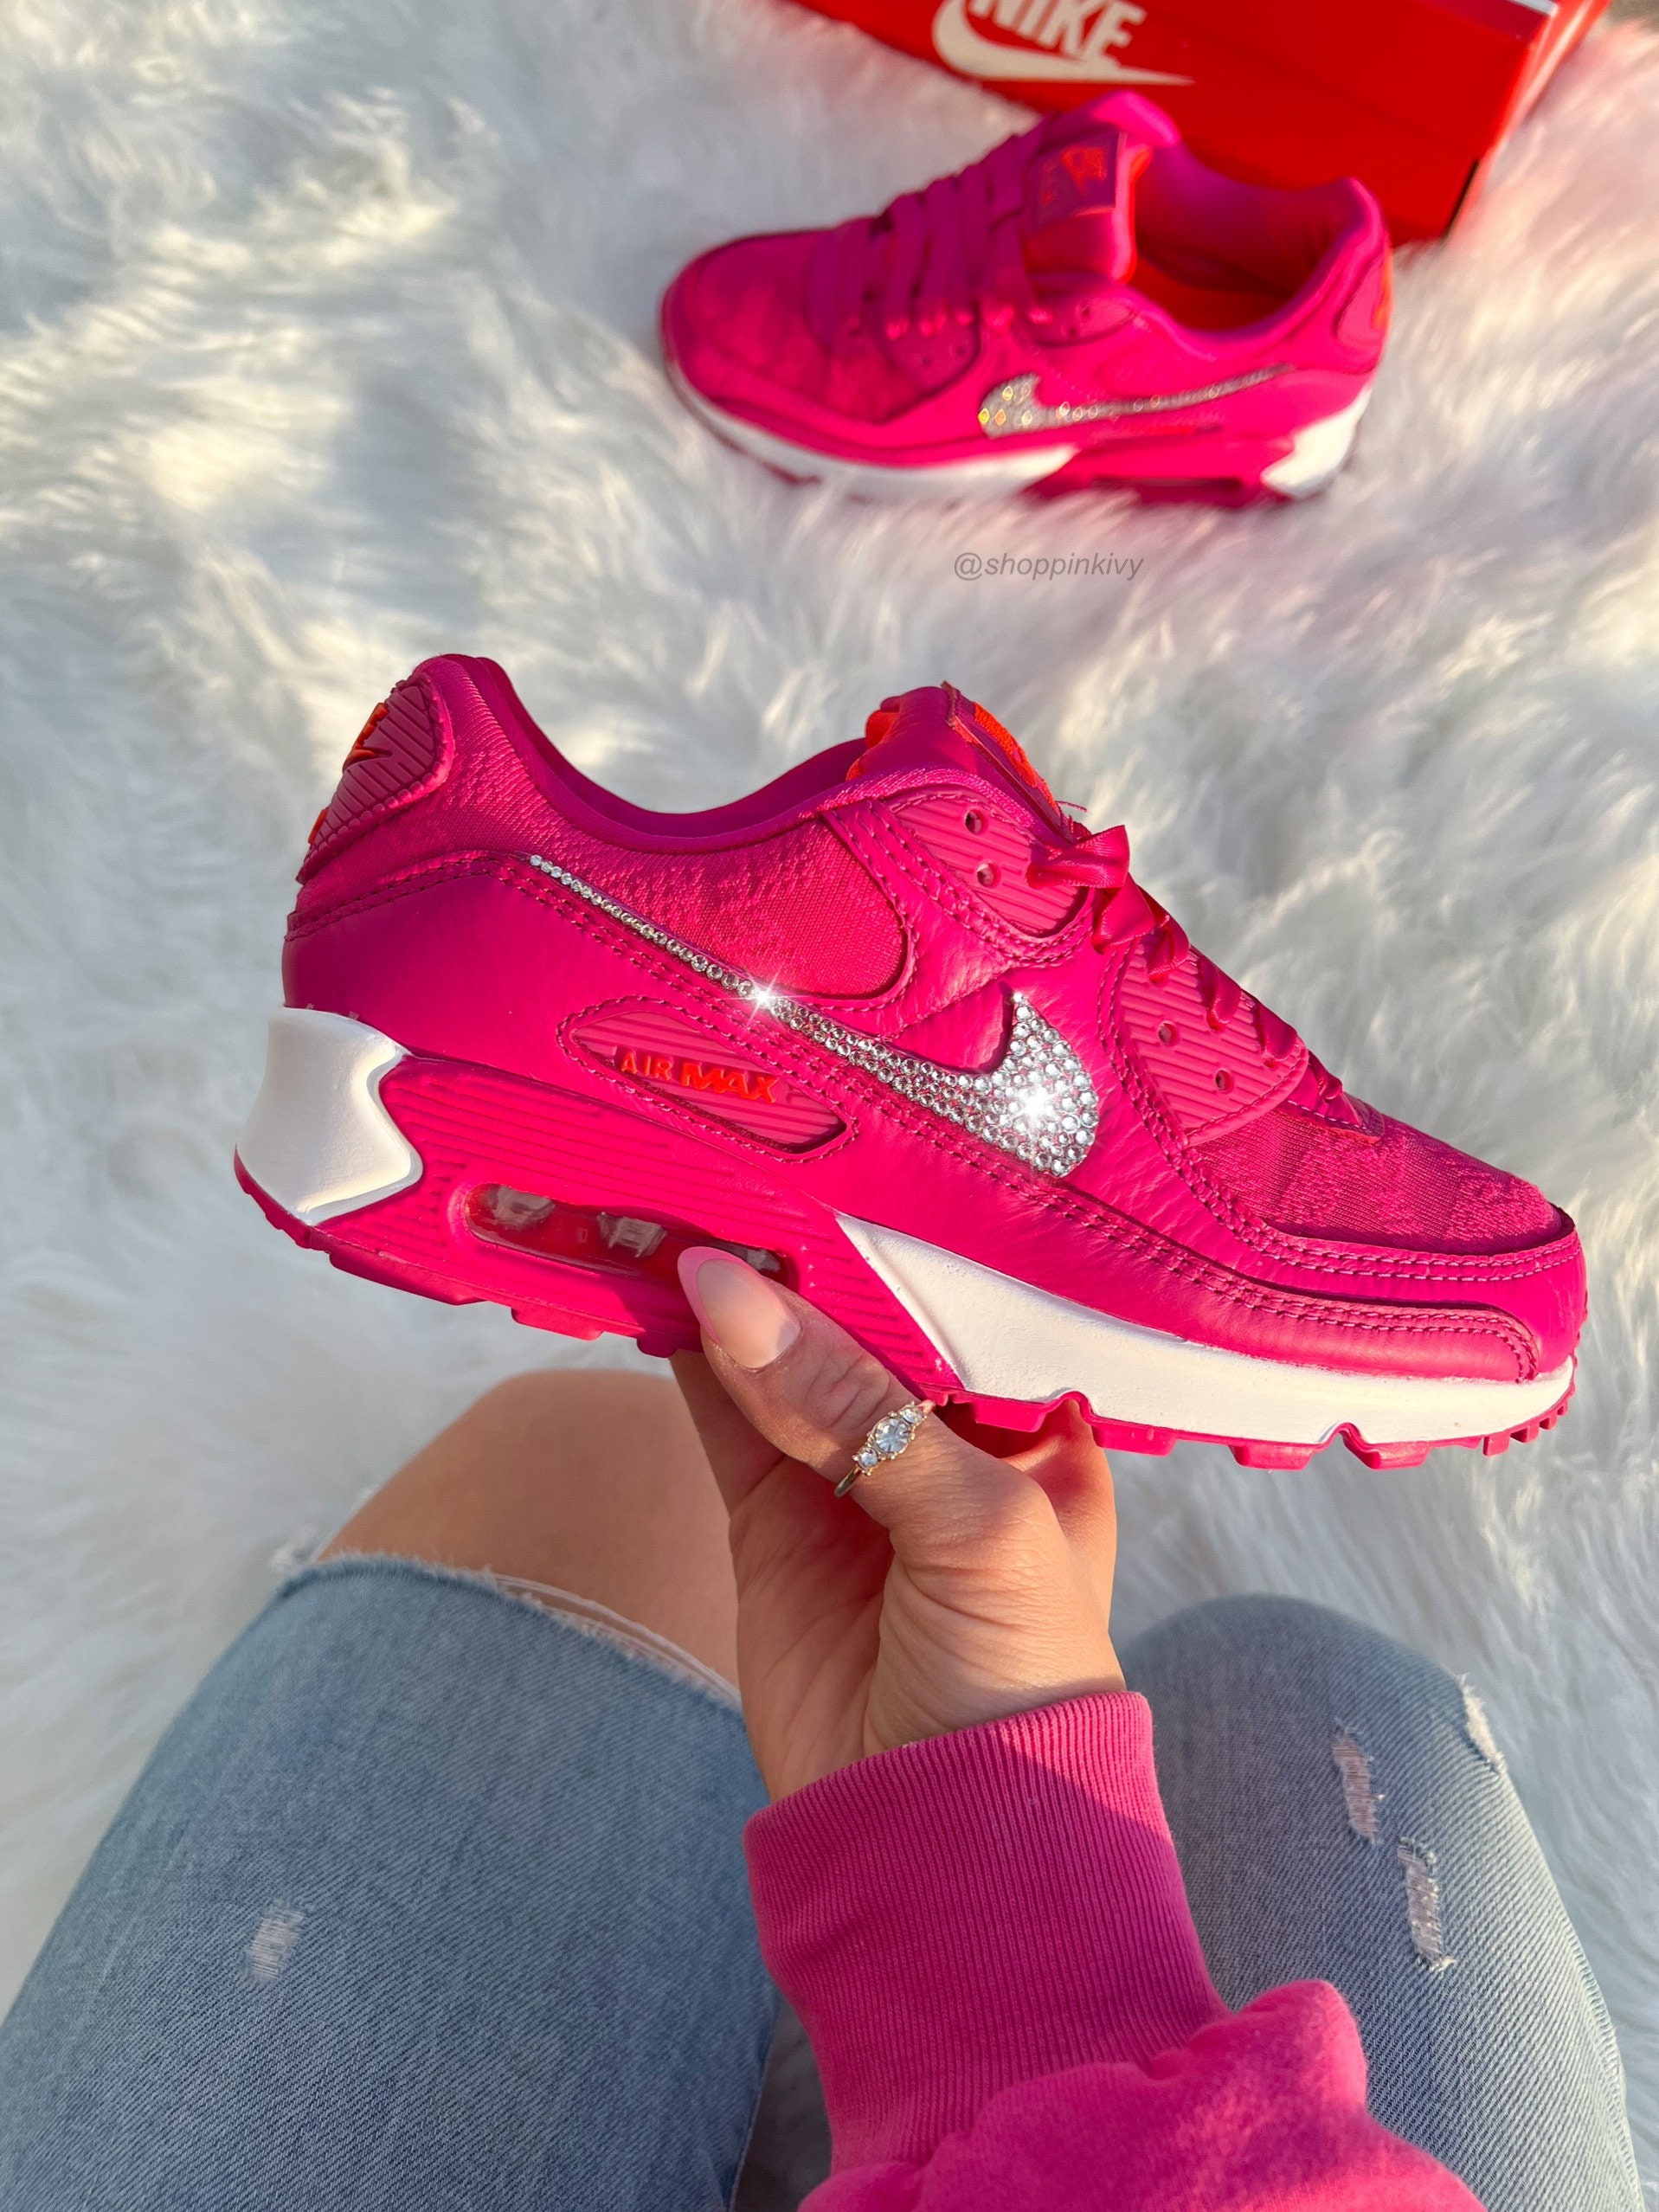 kompakt faglært smertefuld Bling Hot Pink Nike Air Max 90 Shoes - Etsy